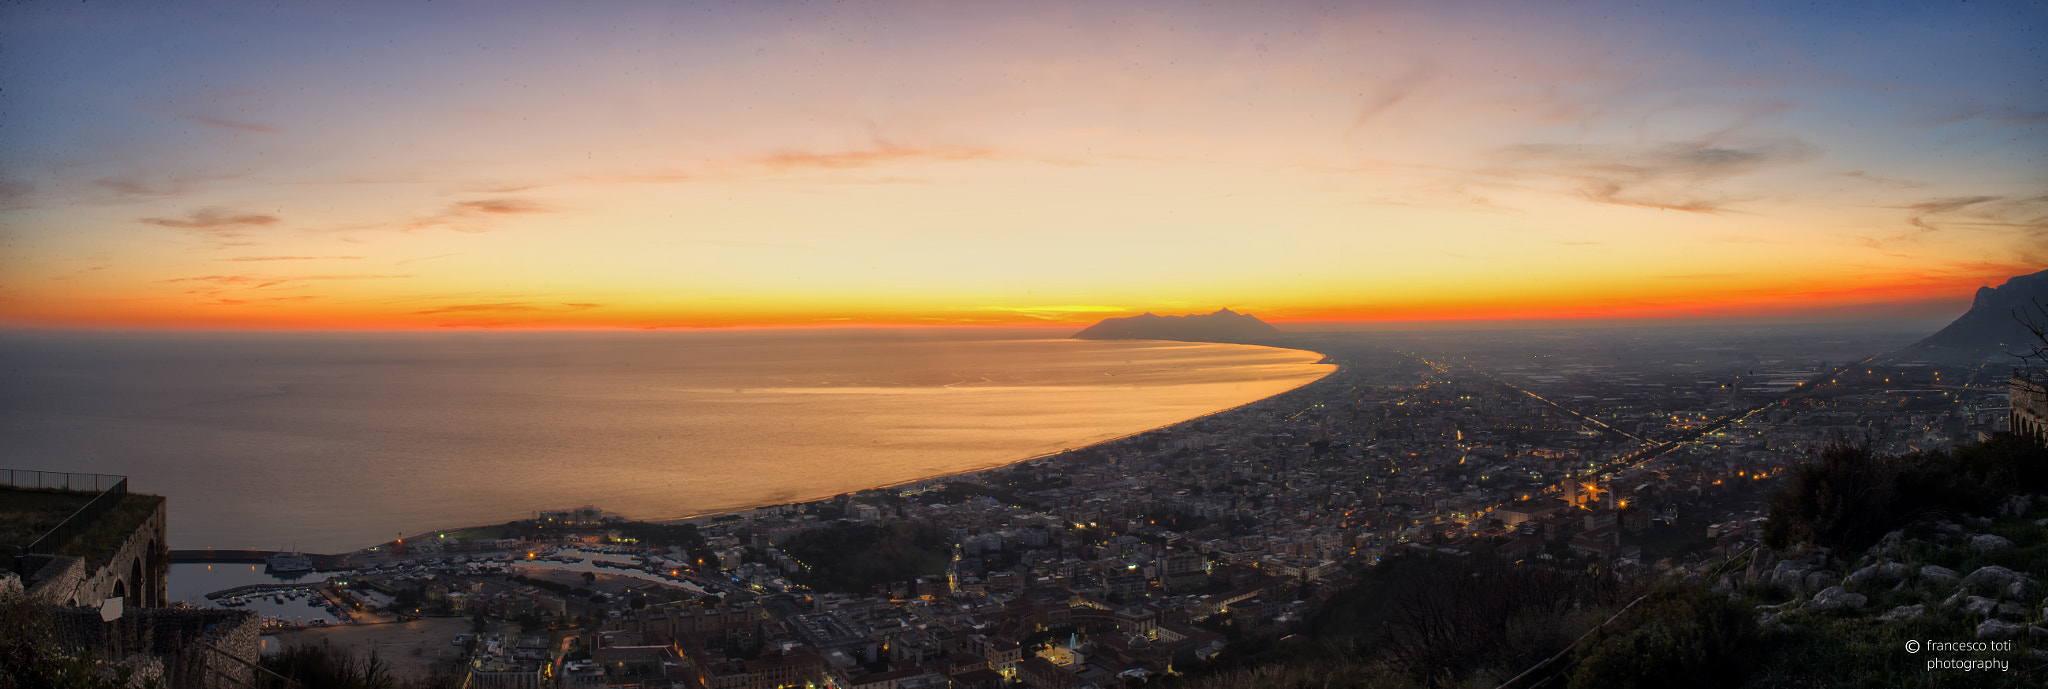 Nikon D600 sample photo. Terracina sunset panoramic view photography